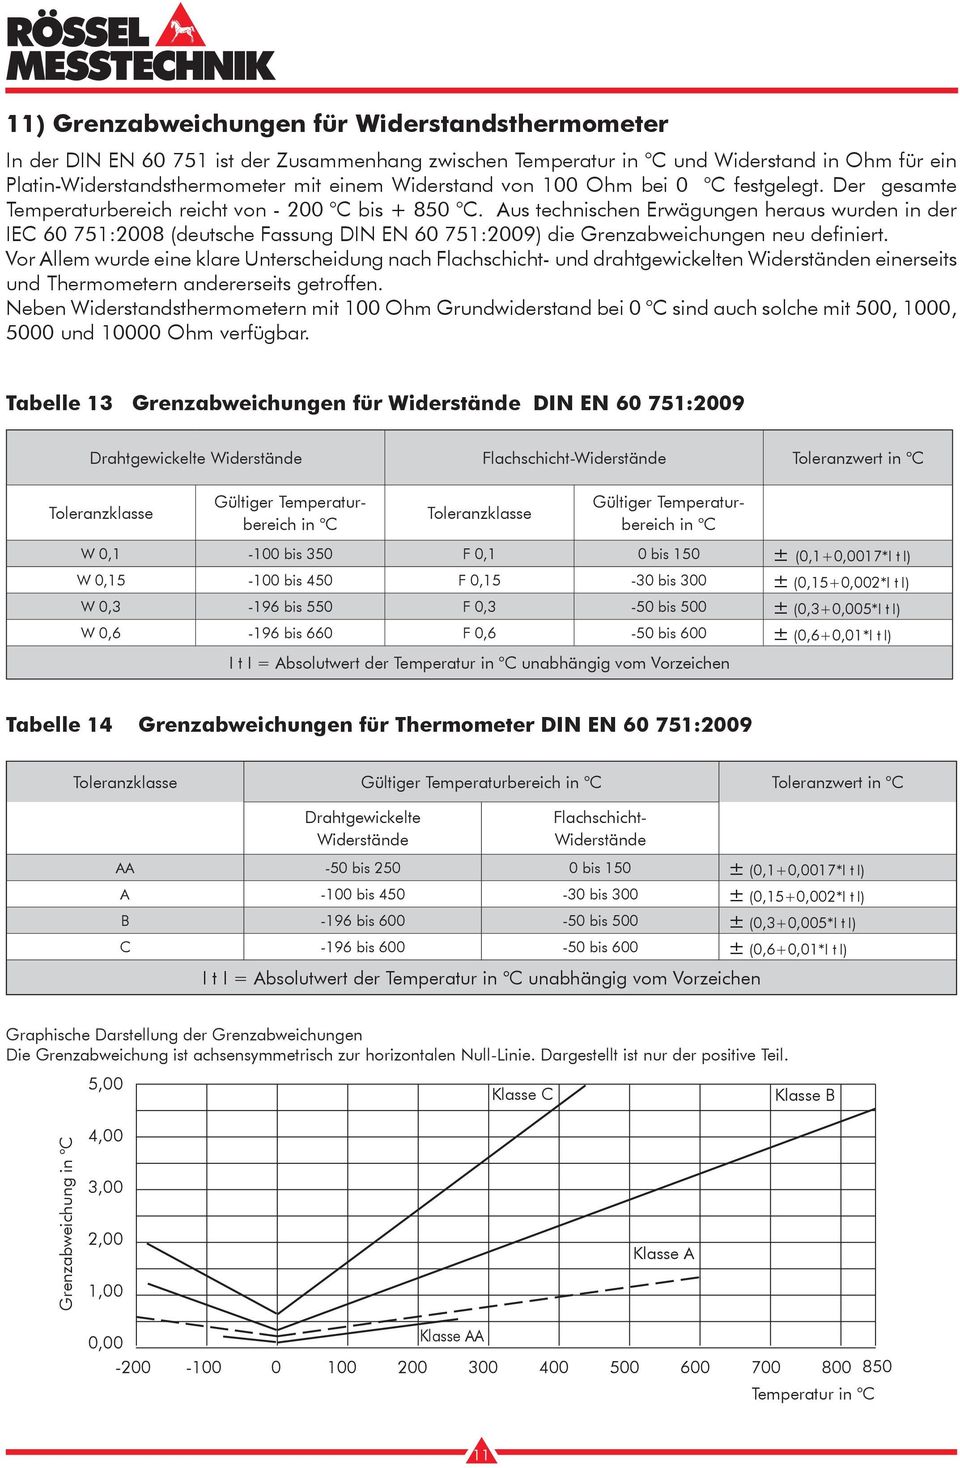 Aus technischen Erwägungen heraus wurden in der IEC 60 751:2008 (deutsche Fassung DIN EN 60 751:2009) die Grenzabweichungen neu definiert.